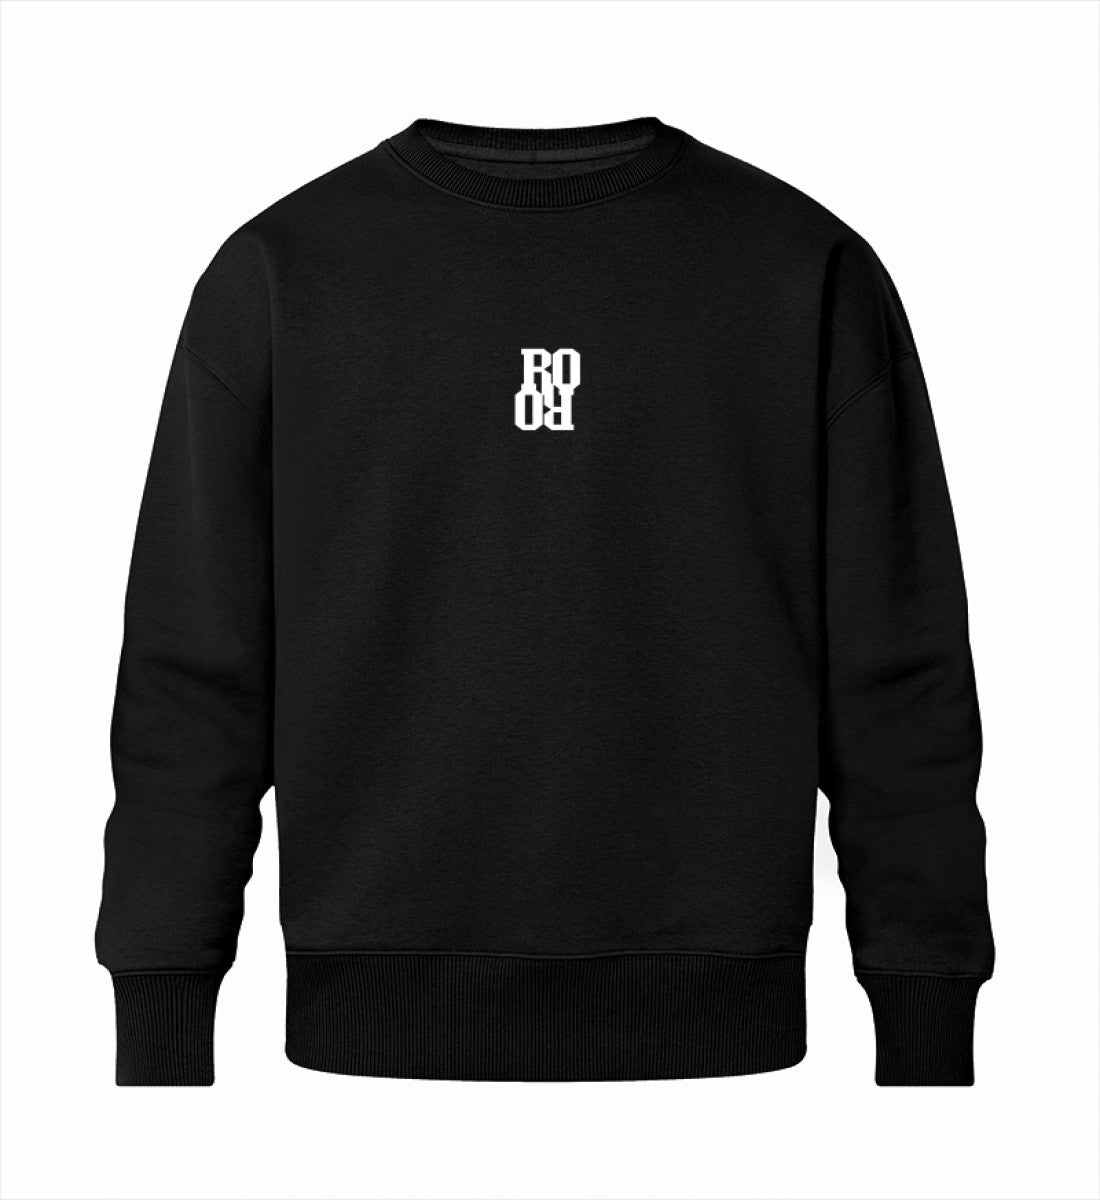 Schwarzes Sweatshirt Unisex für Frauen und Männer bedruckt mit dem Design der Roger Rockawoo Kollektion shredding Culture Community